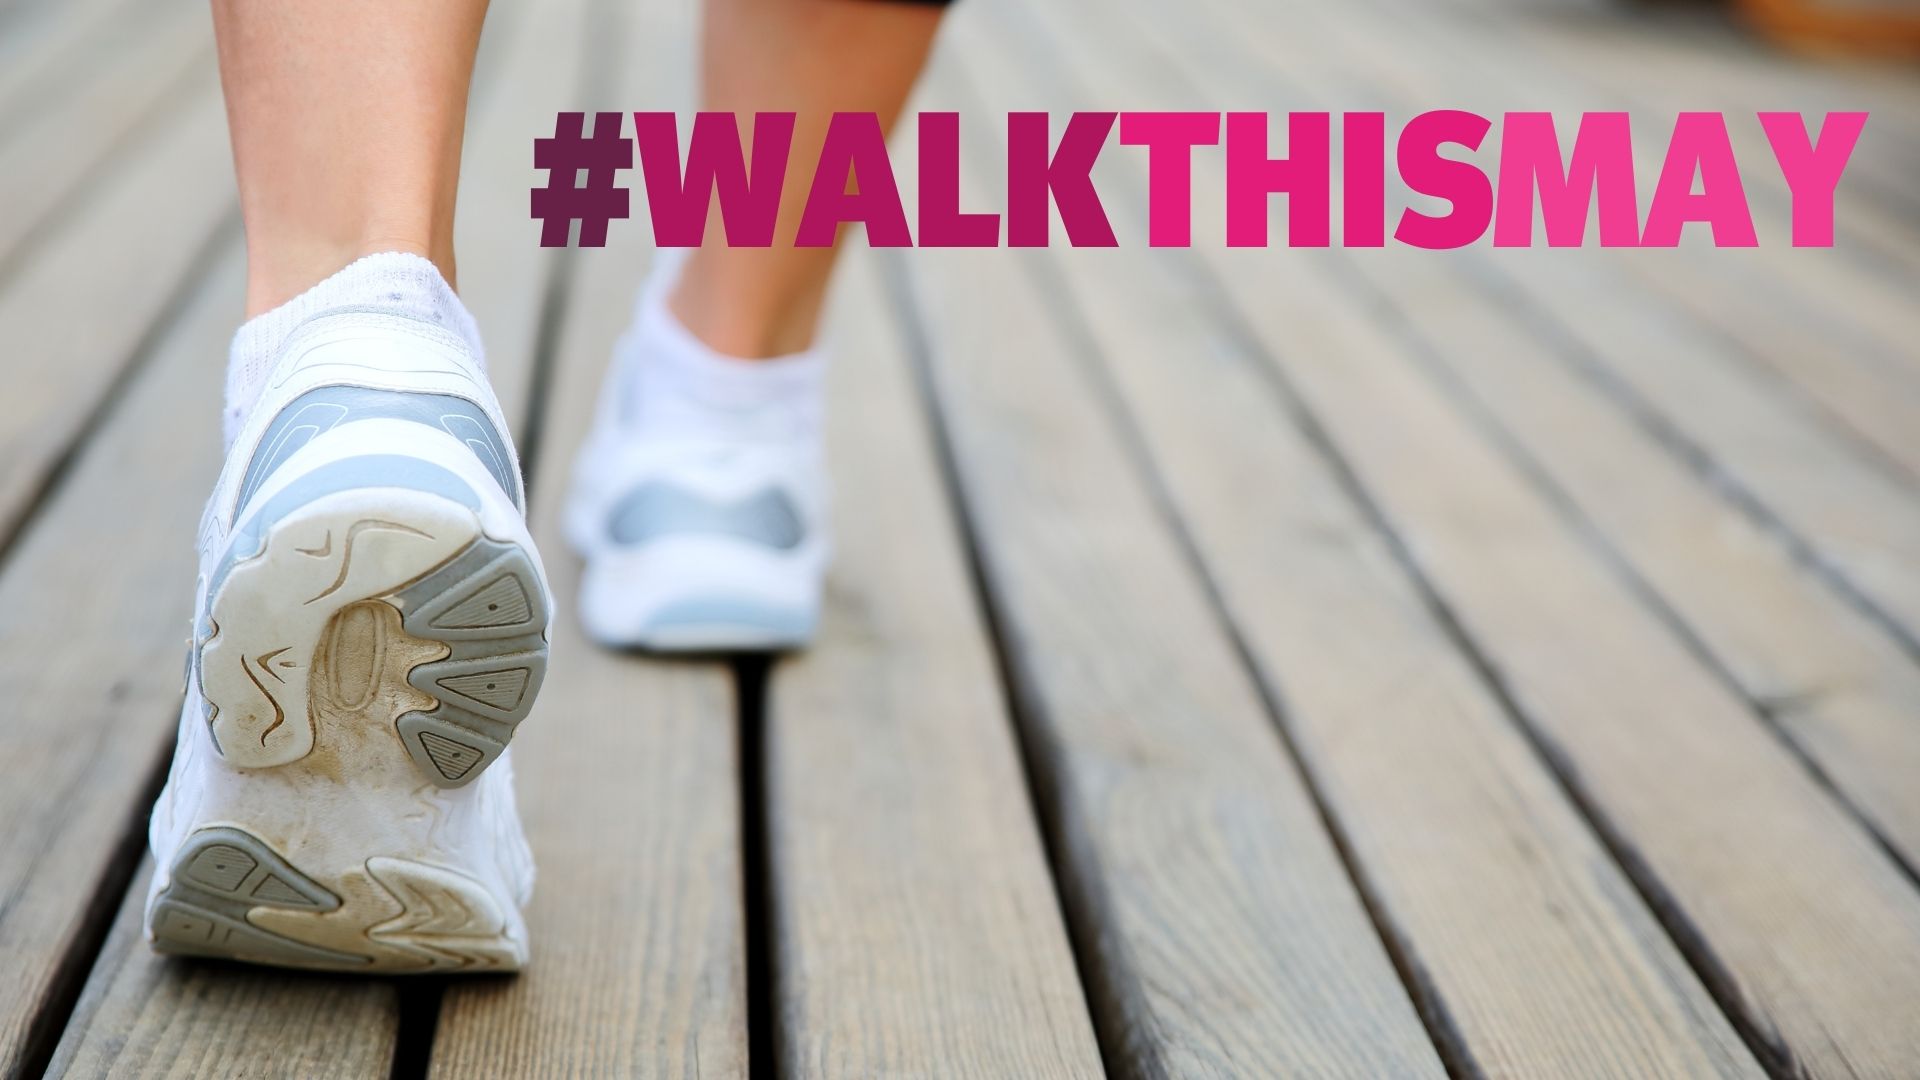 Feet walking with the hashtag #WALKTHISMAY